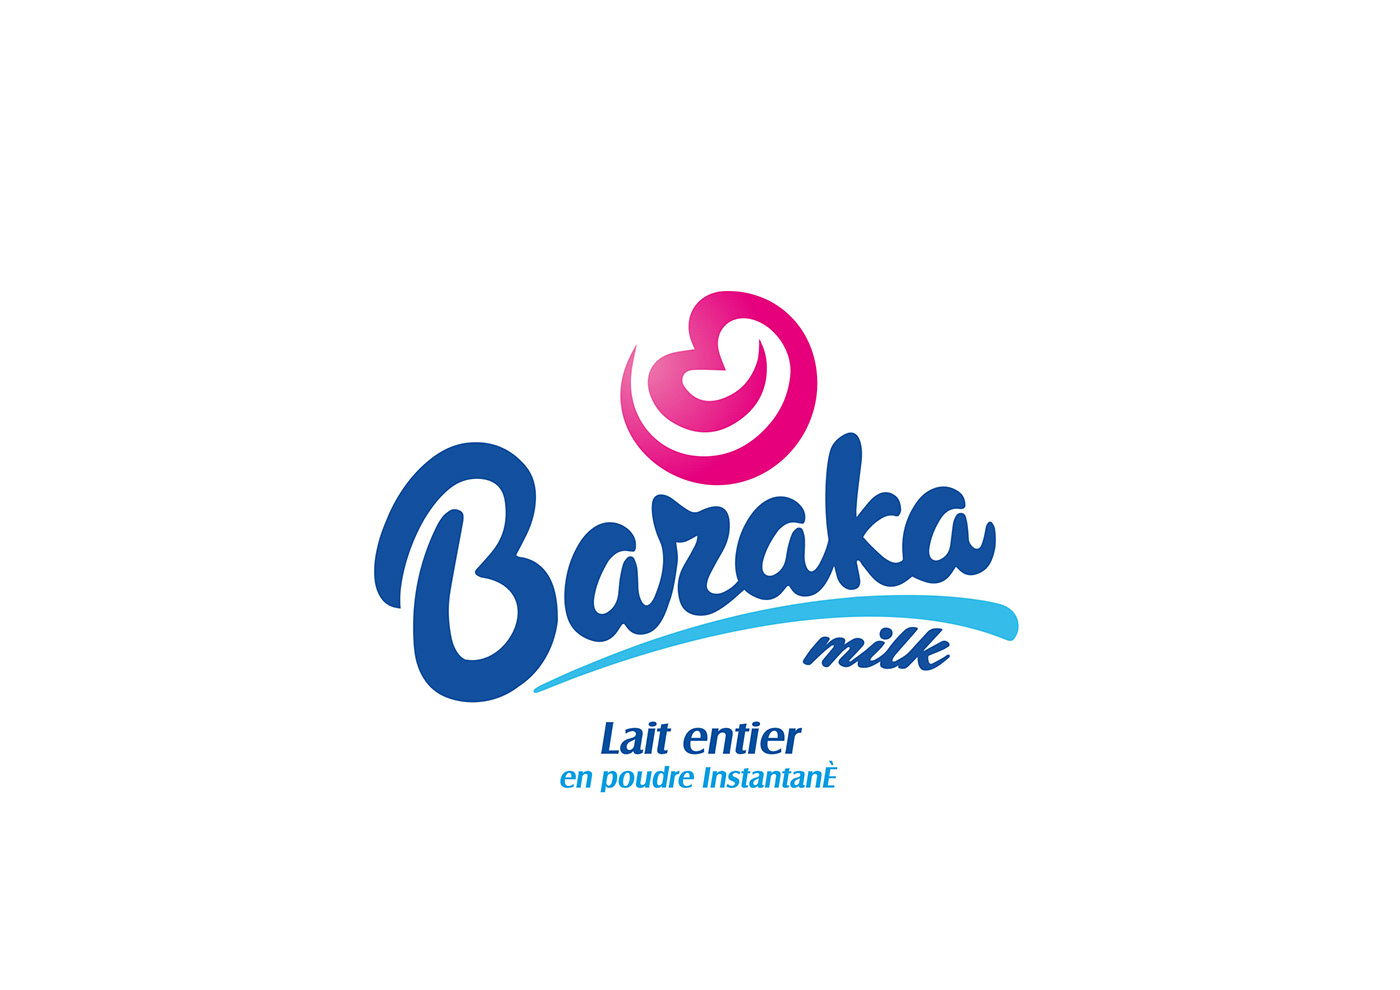 milk box design Logo Design branding  design Graphic Designer Advertising 